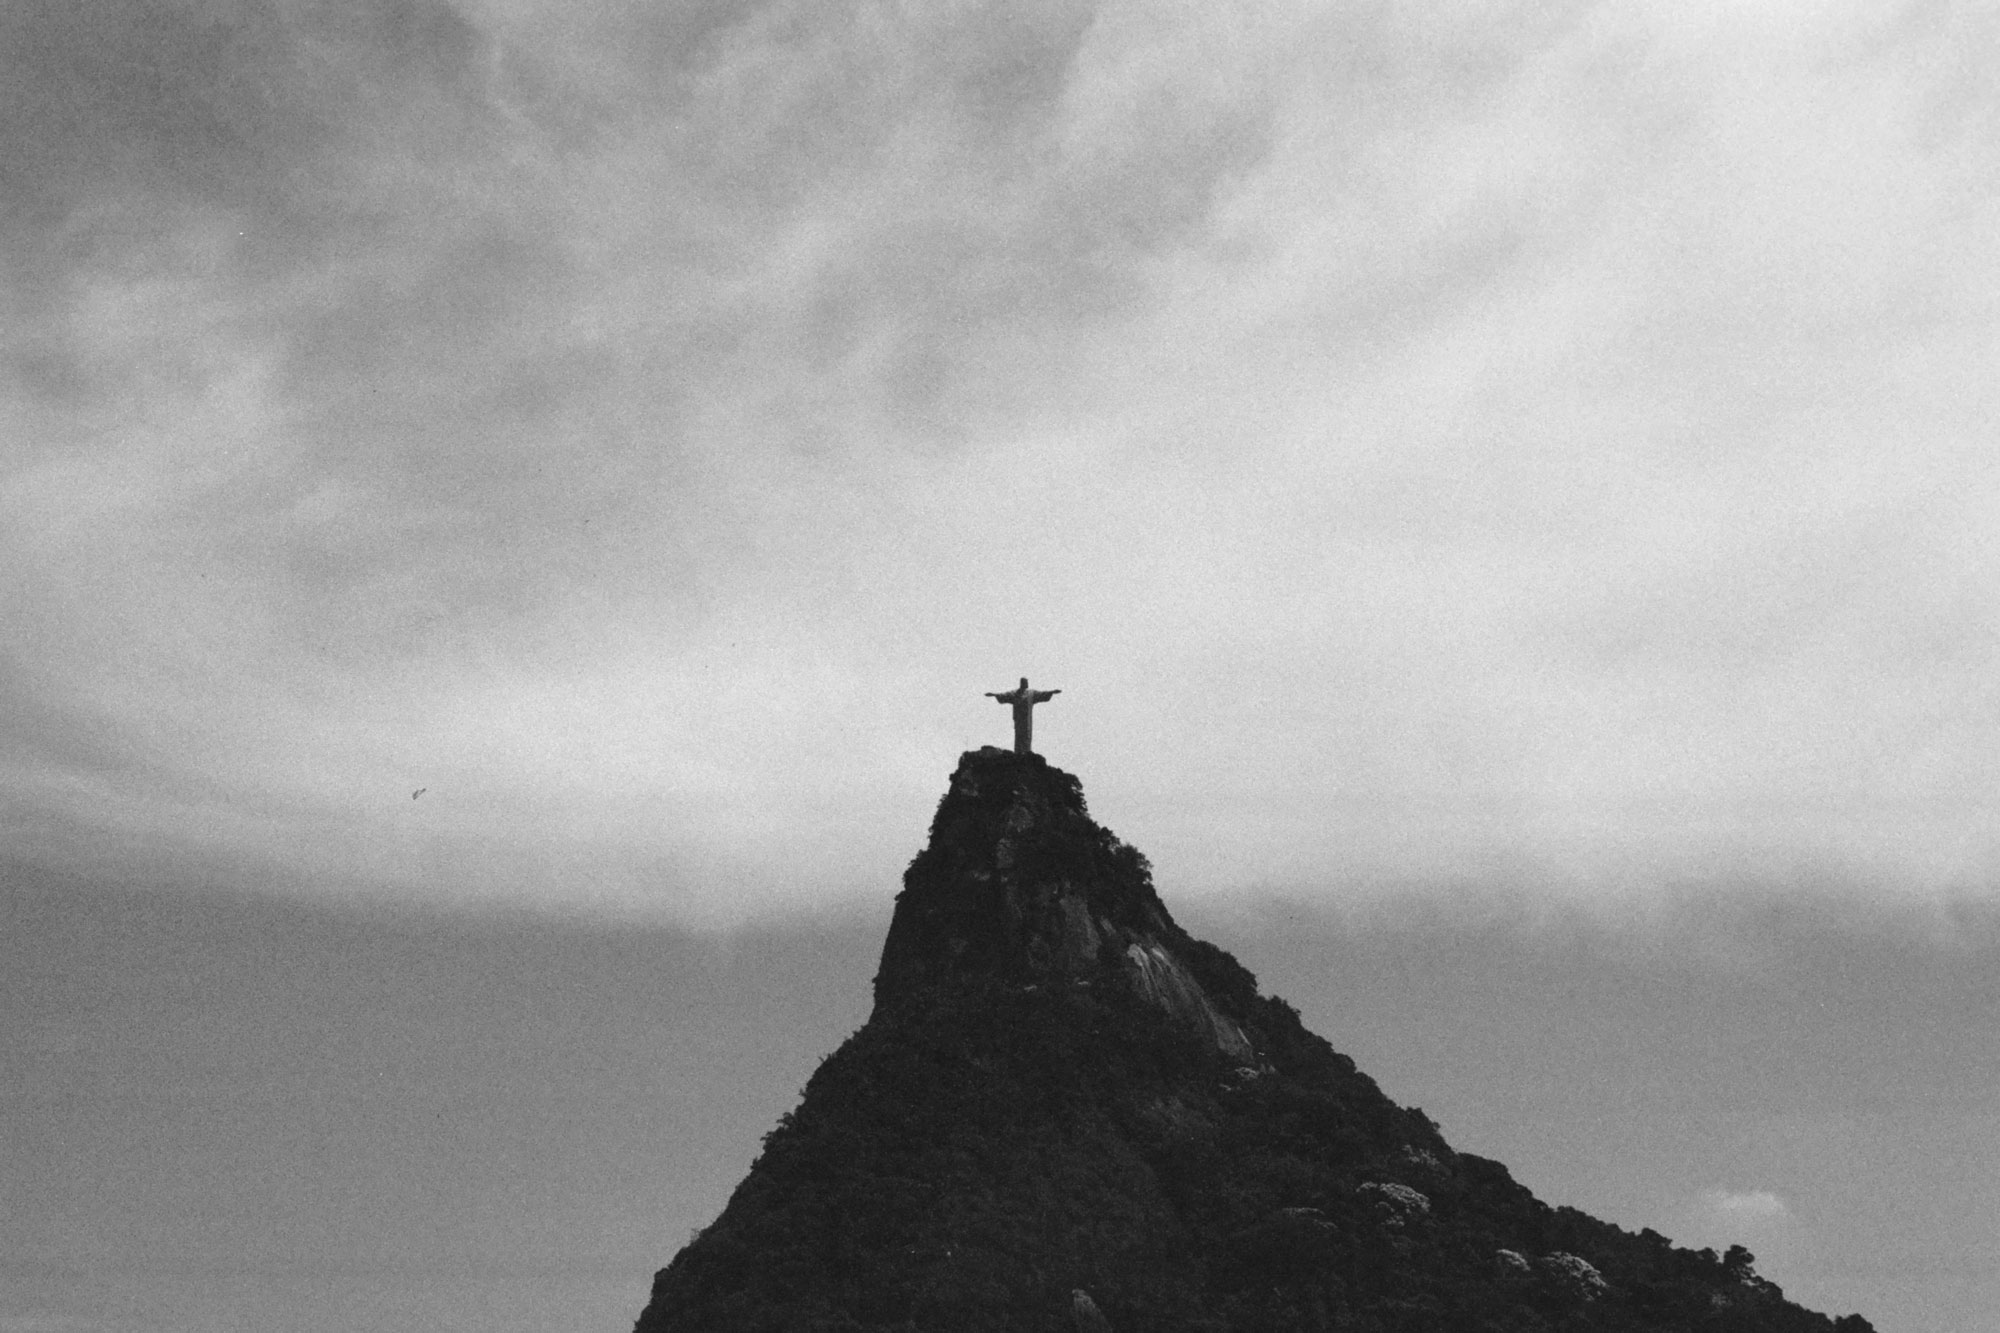 Rio de Janeiro Corcovado Christ the Redeemer